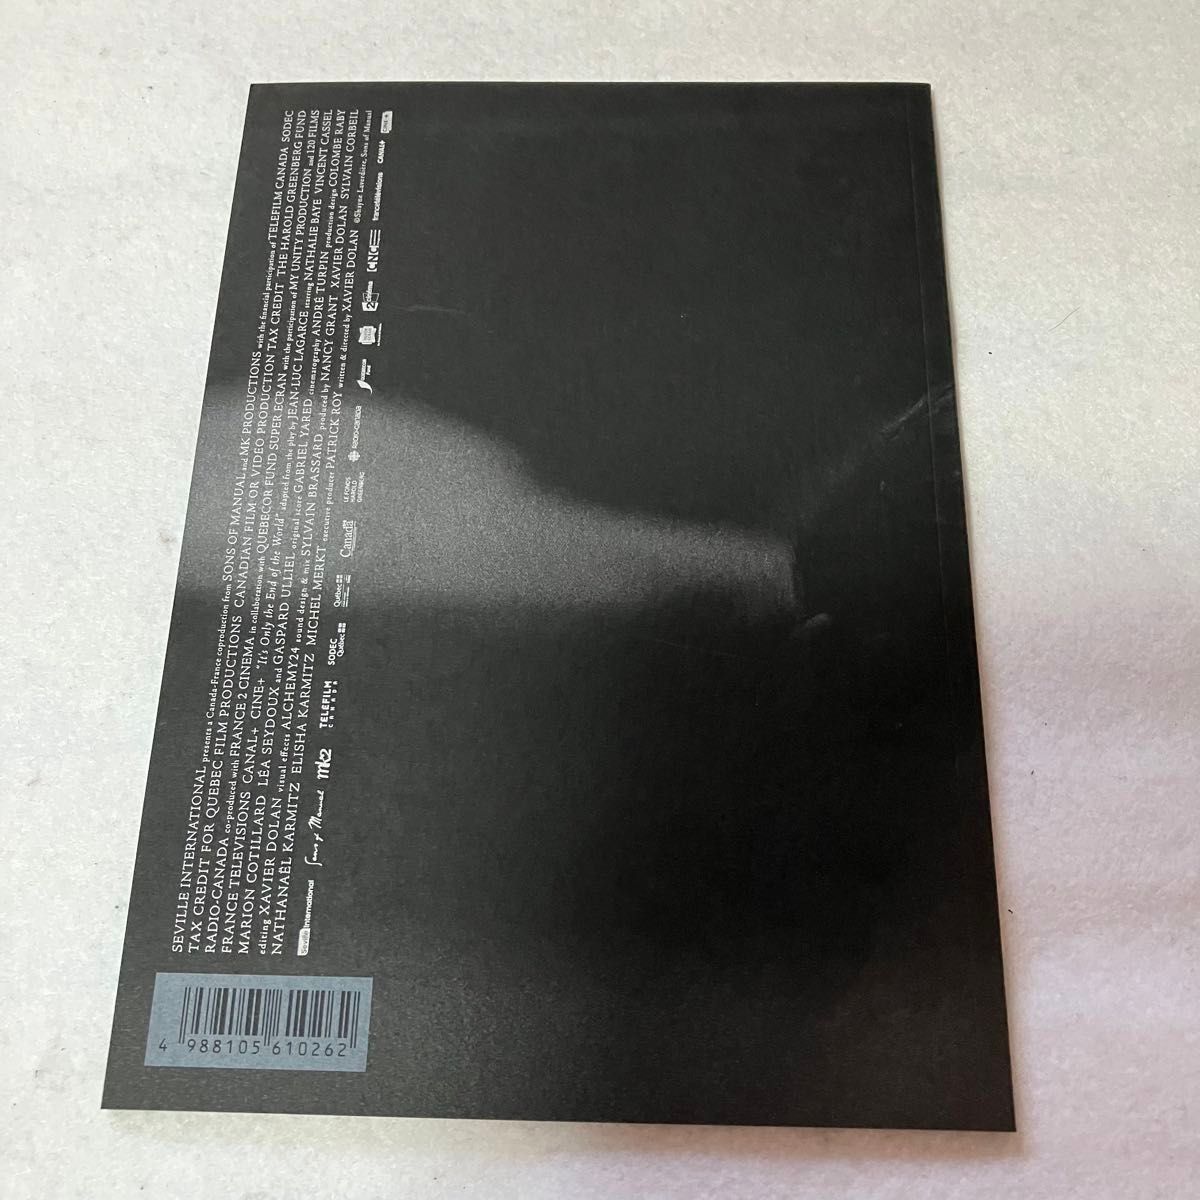 【レンタル落ち】たかが世界の終わり('16カナダ/仏) DVD+パンフレット+クリアファイル